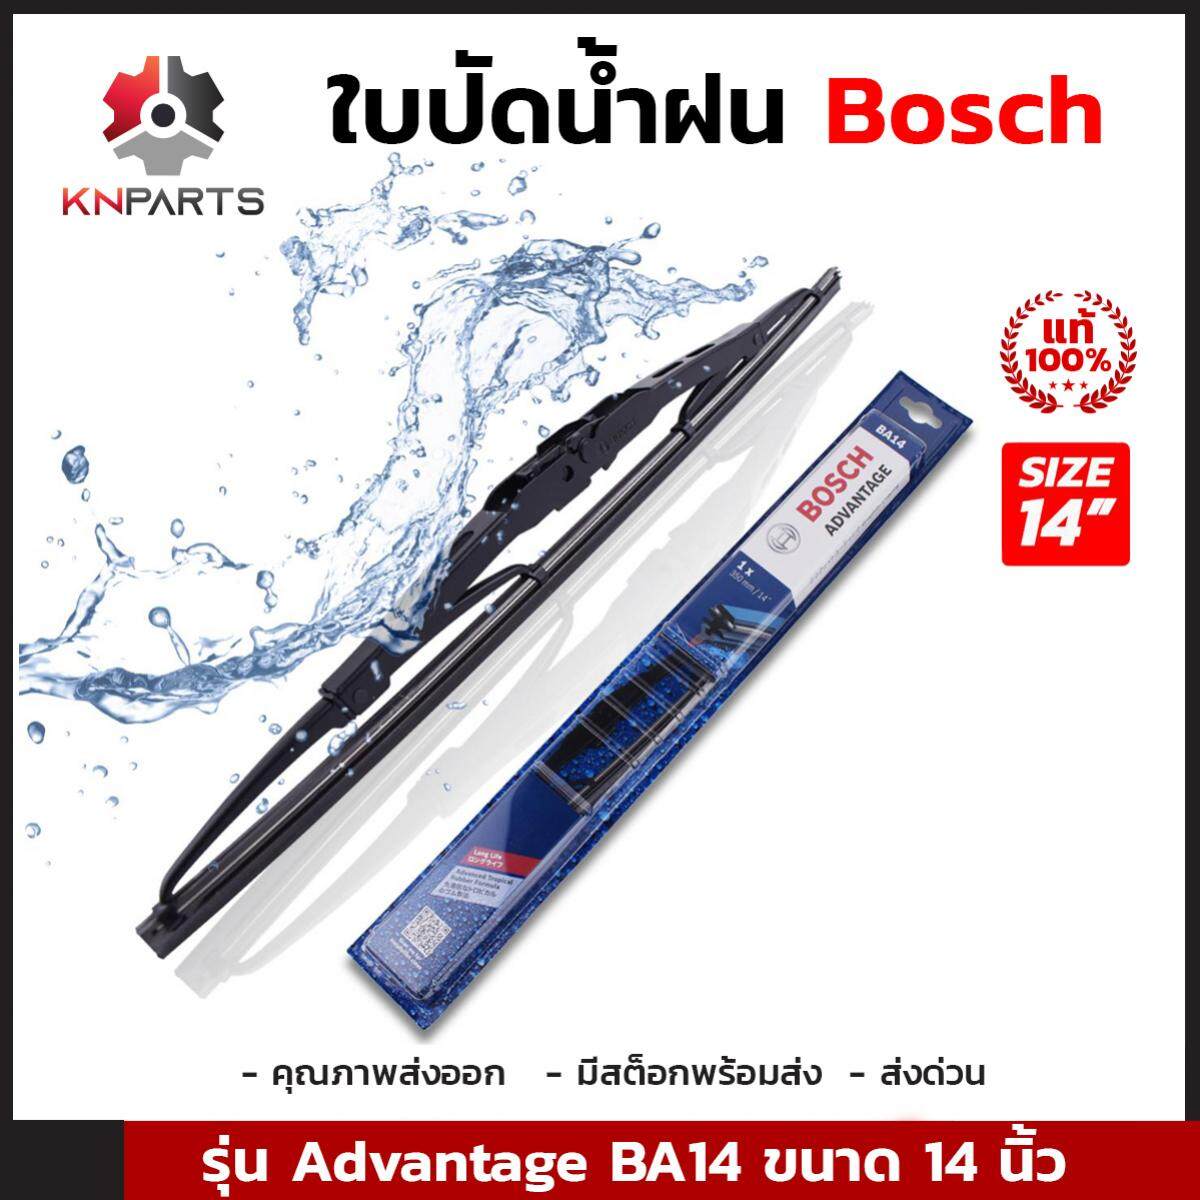 ใบปัดน้ำฝน Bosch รุ่น Advantage BA14 ขนาด 14 นิ้ว